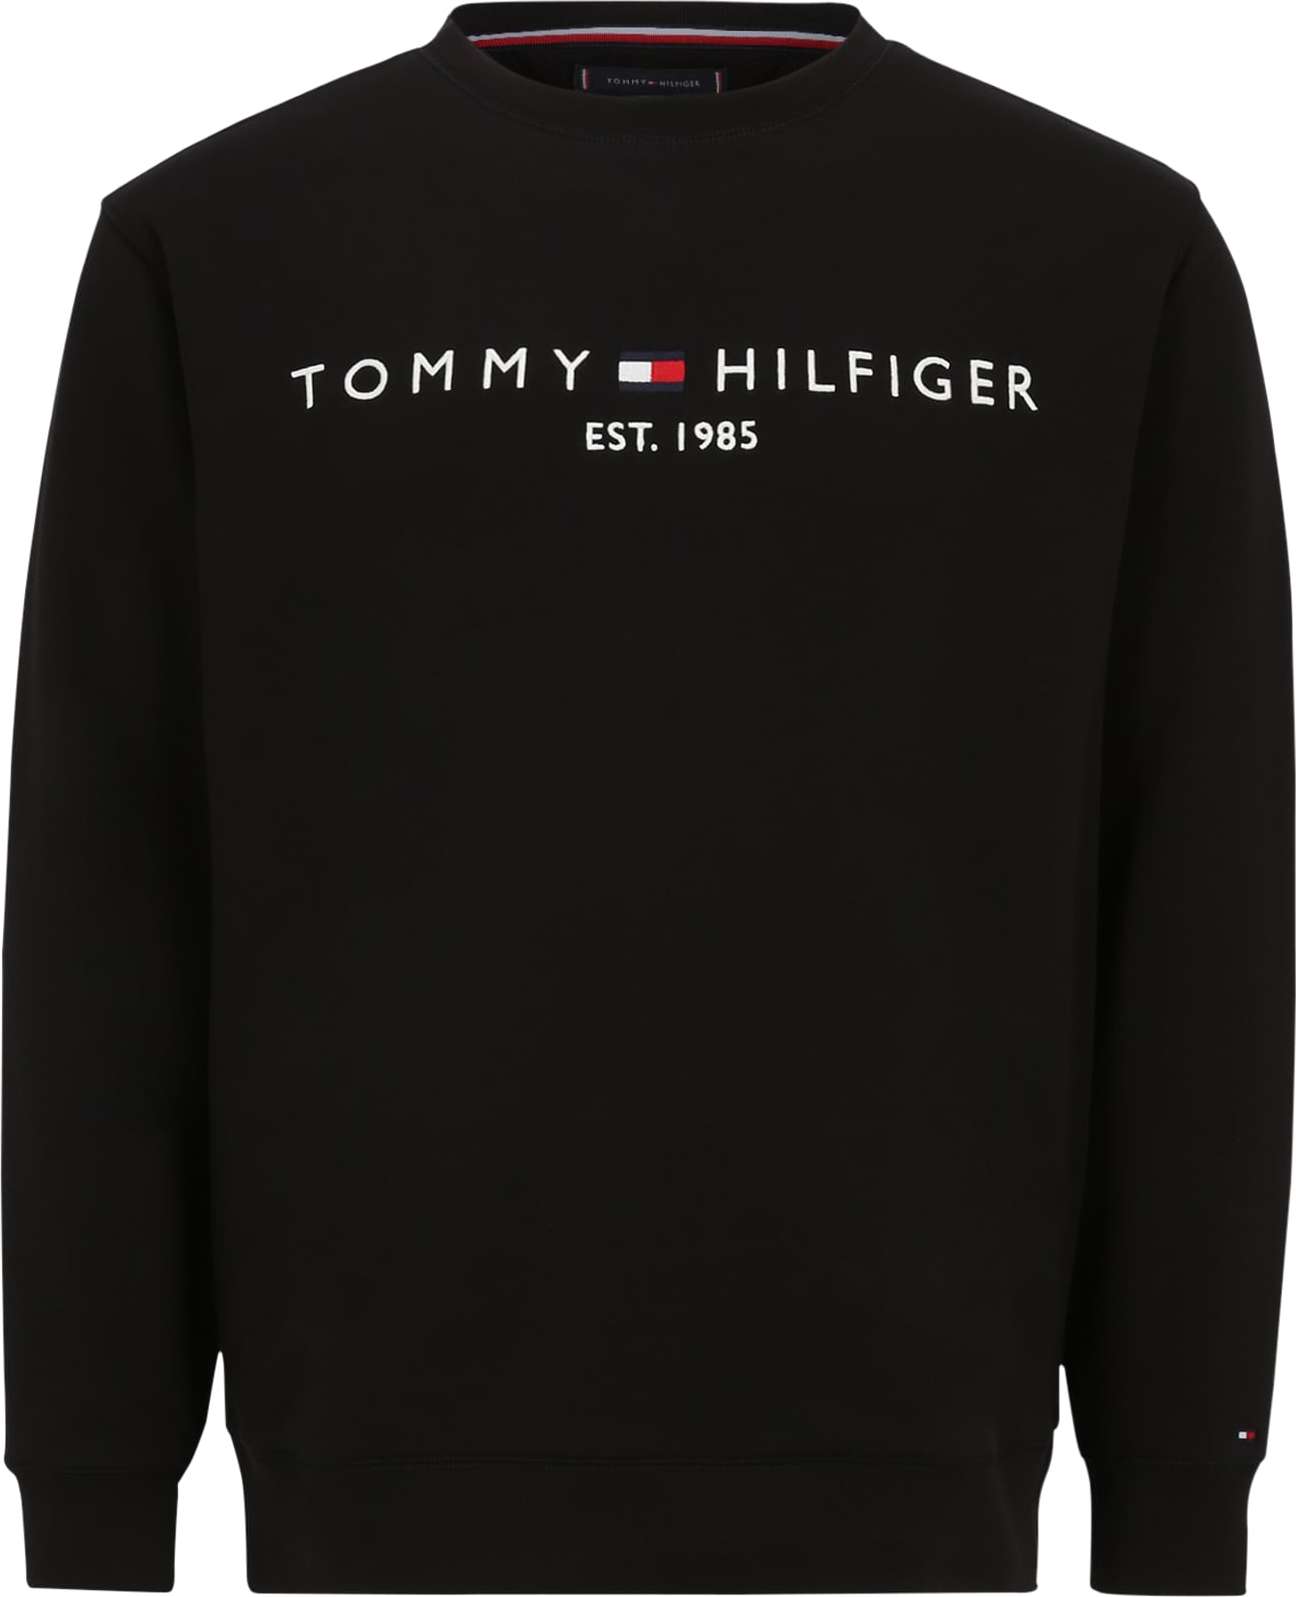 Mikina Tommy Hilfiger Big & Tall námořnická modř / ohnivá červená / černá / bílá